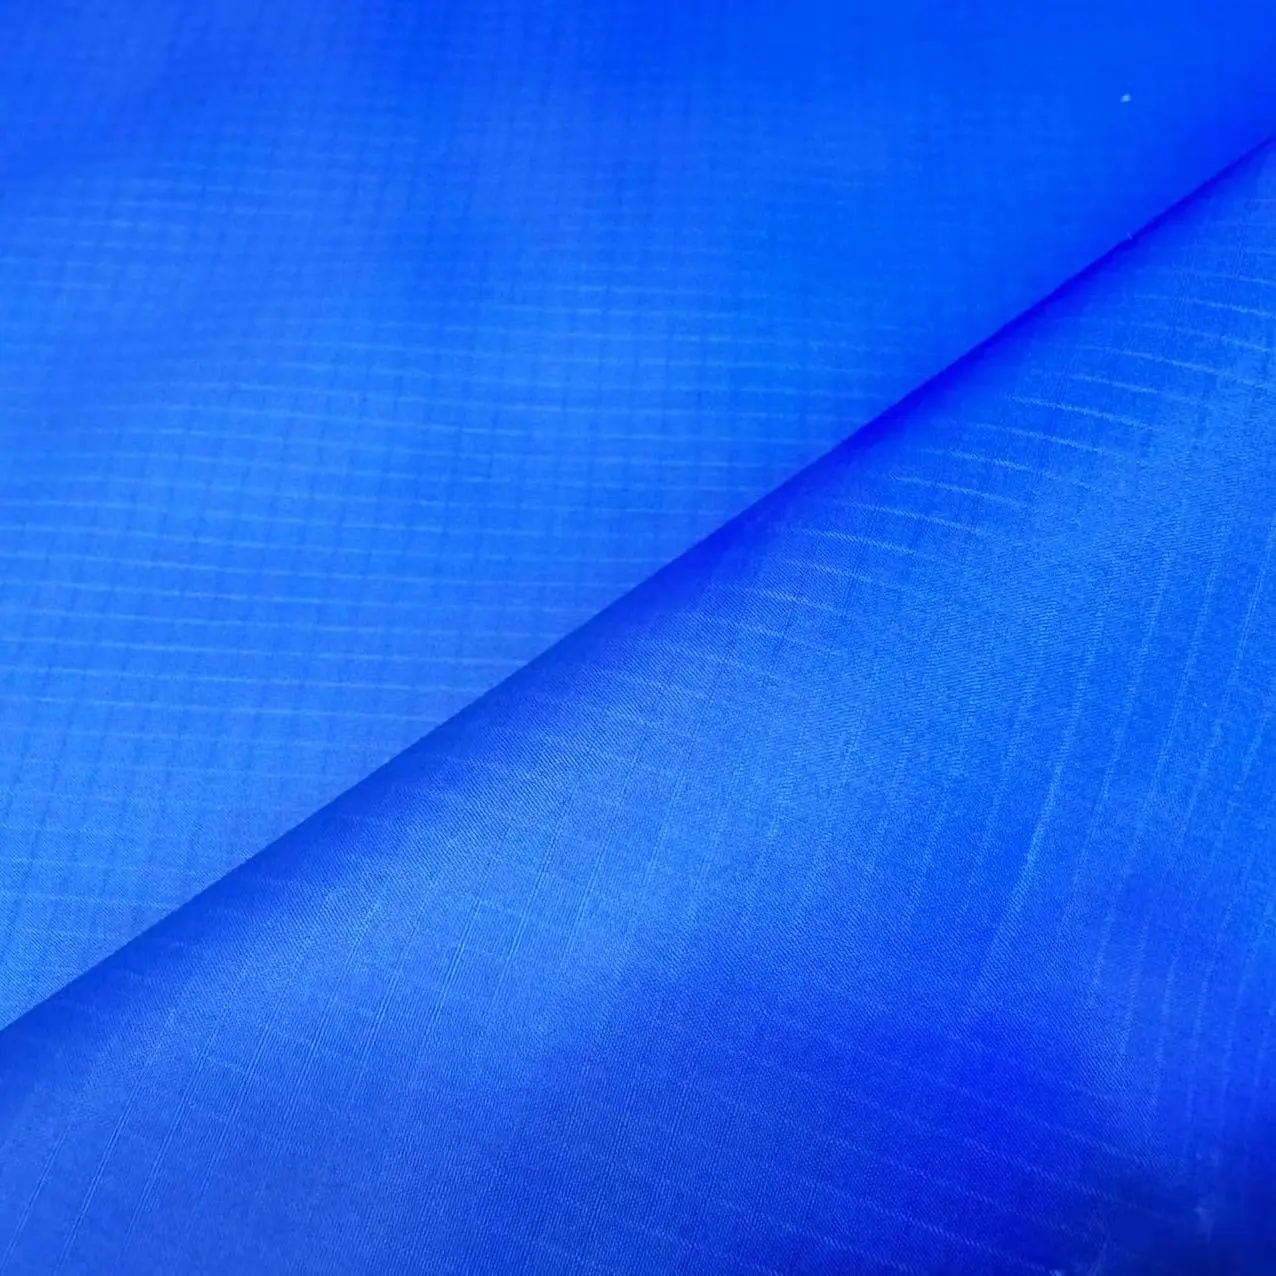 פוליאסטר ריפסטופ טפטה עמיד למים ממוחזר בהתאמה אישית 100 פוליאסטר לבגדי ספורט